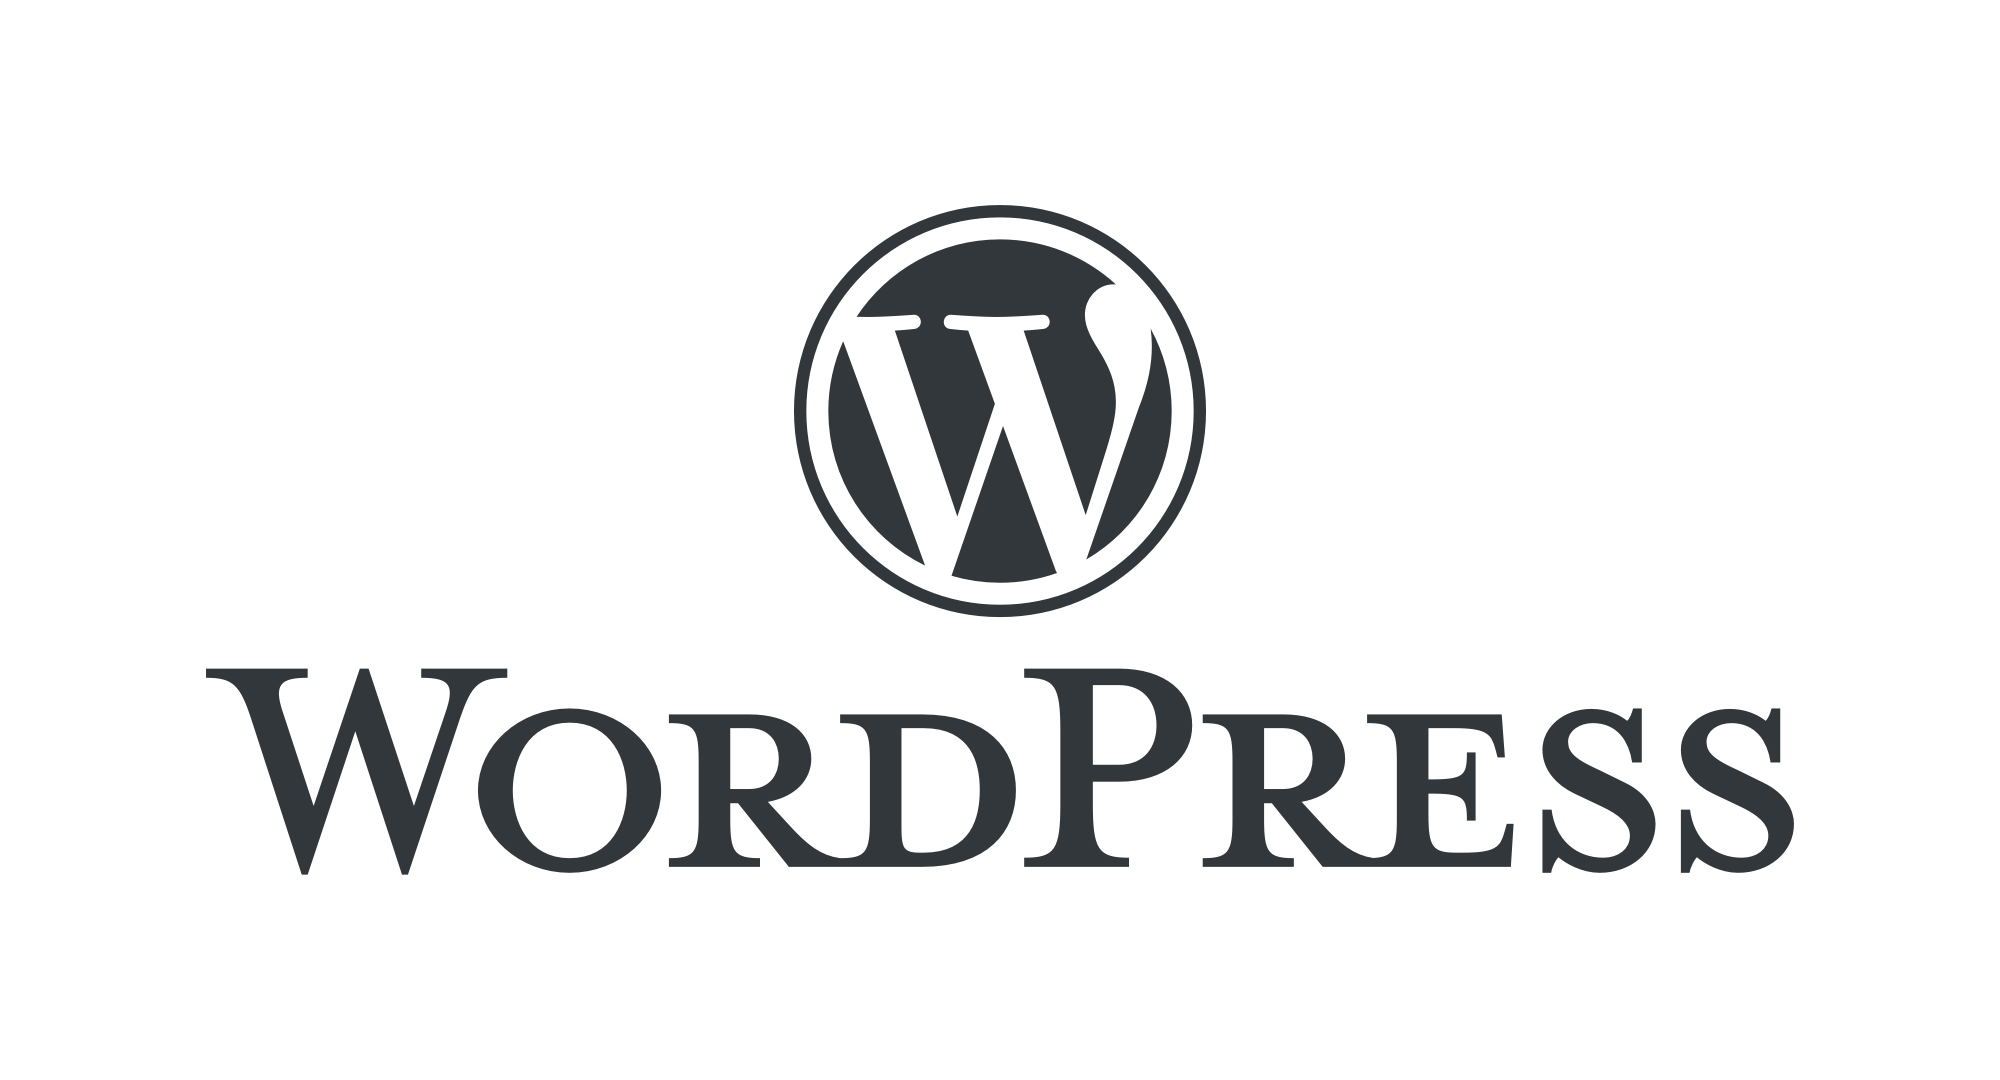 Logo of WordPress